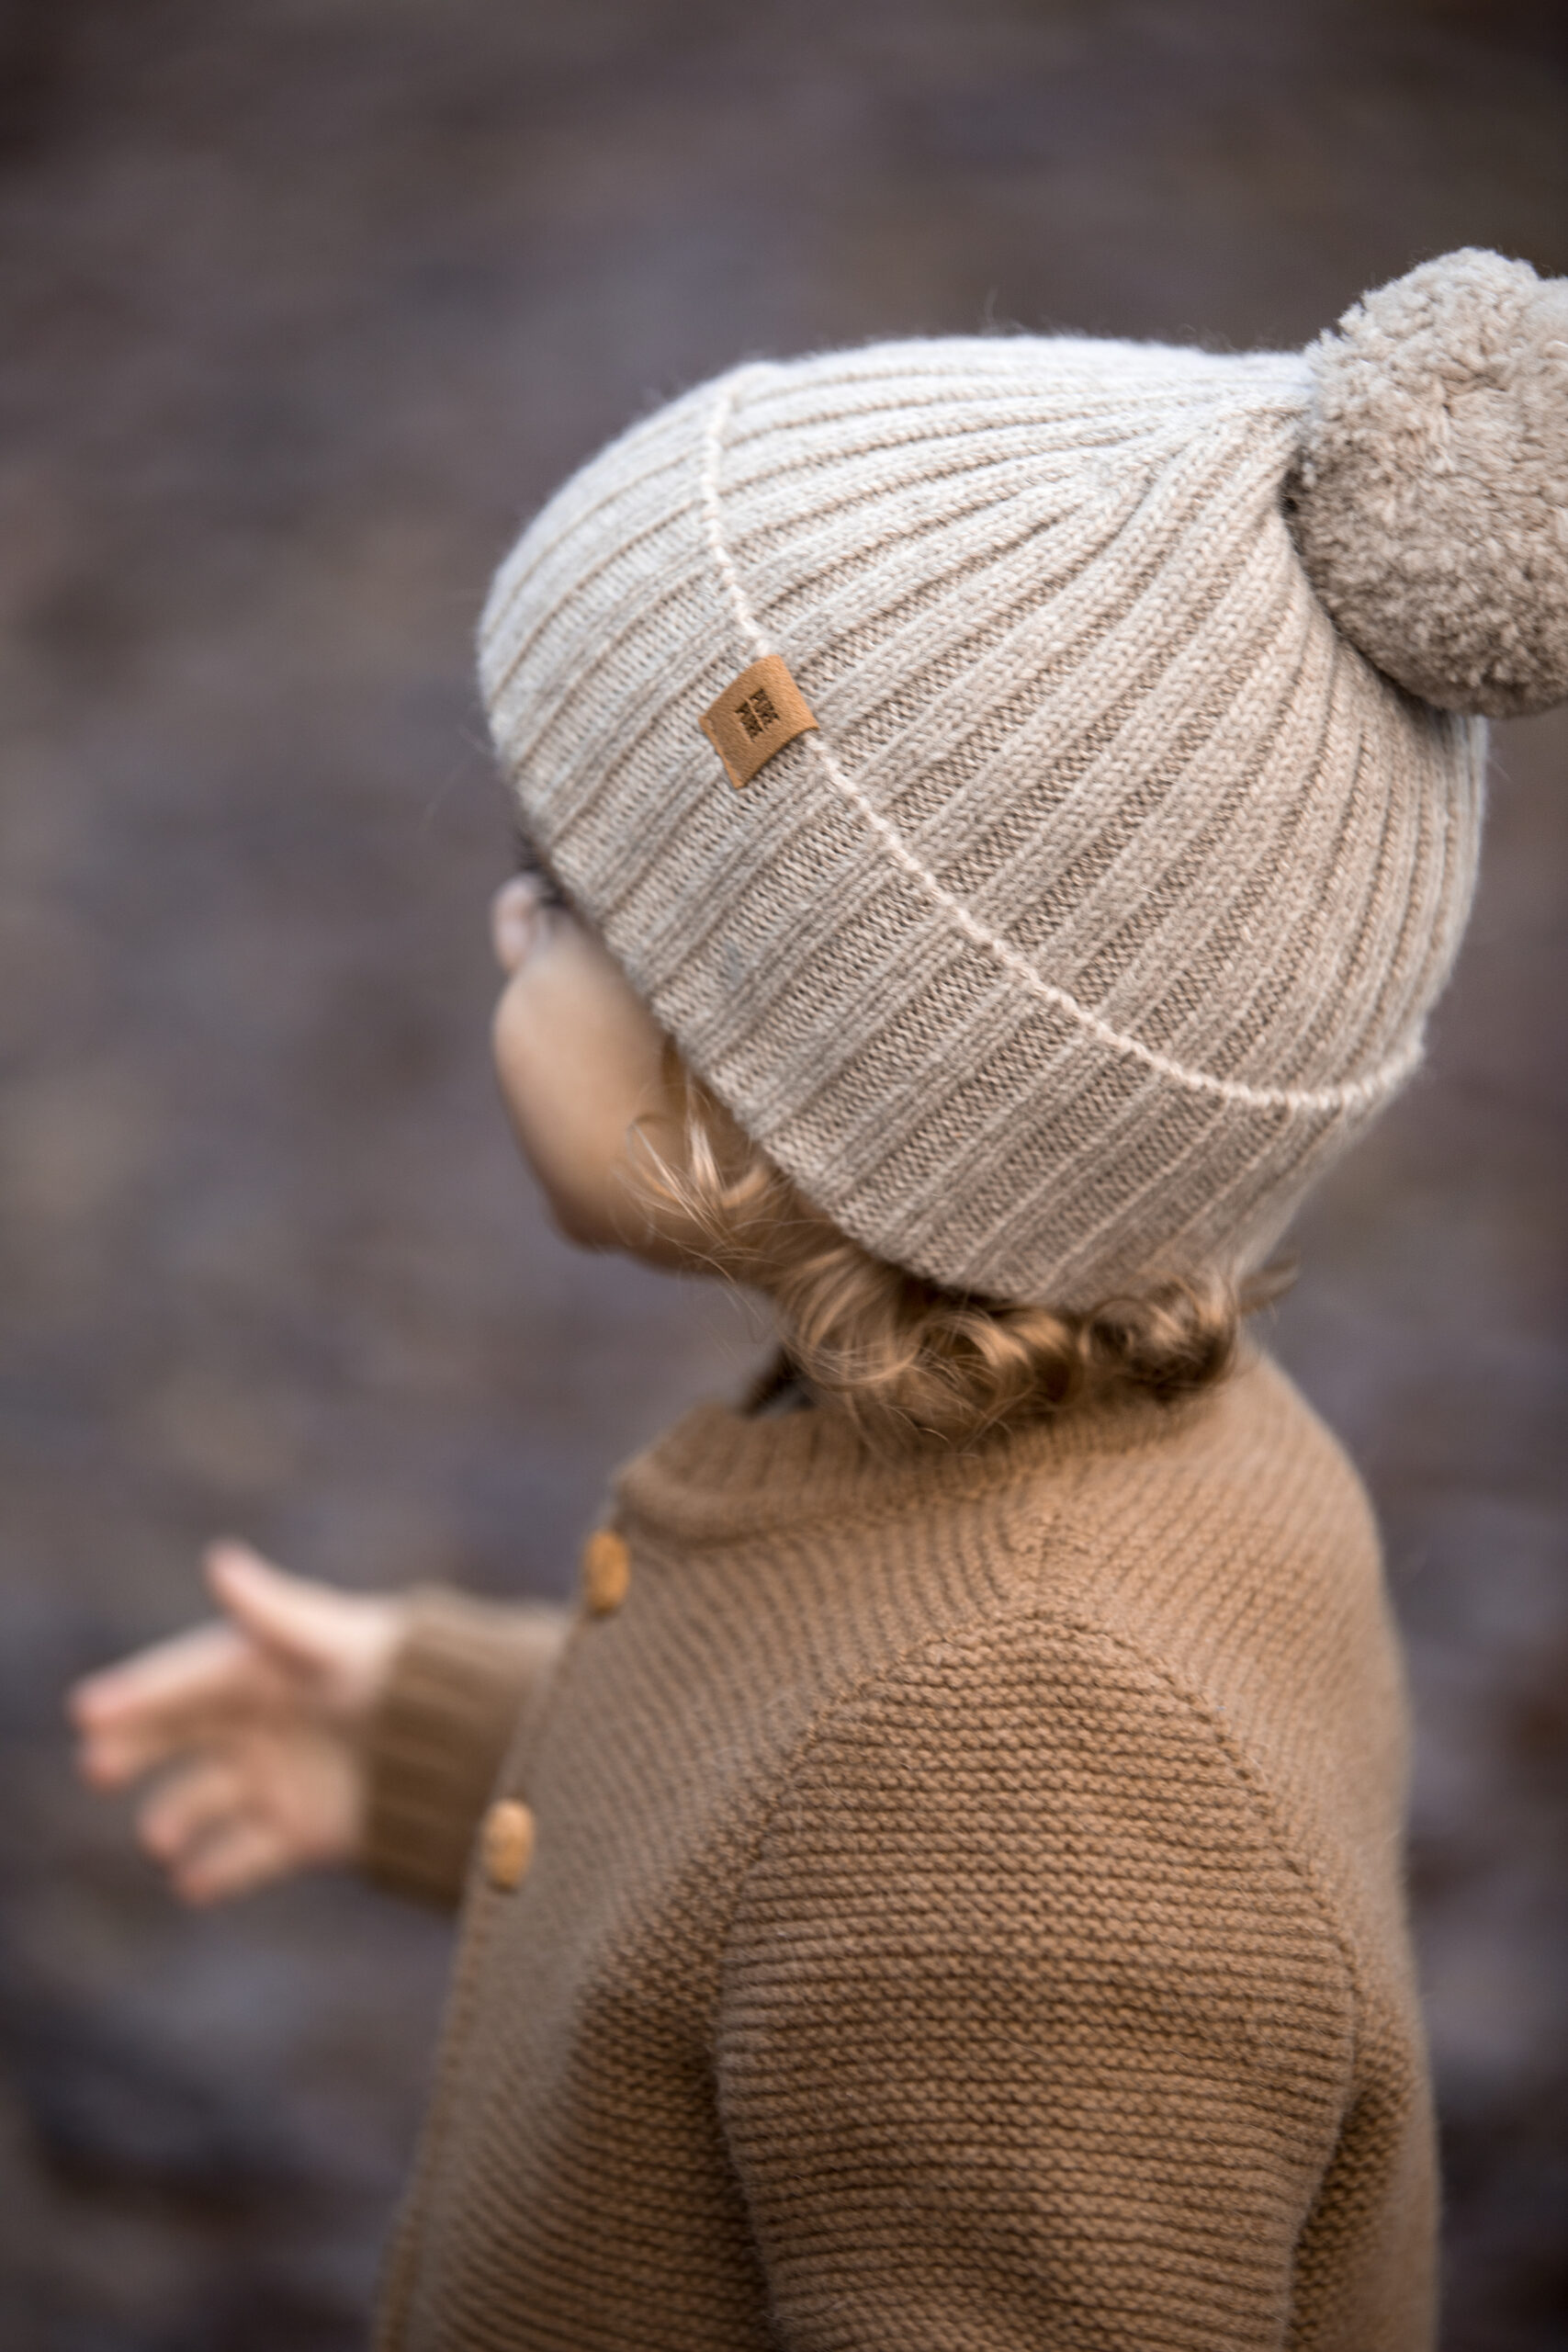 Pure Pure luksuslik alpakavillane müts lastele, Cashmere Villariided - HellyK - Kvaliteetsed lasteriided, villariided, barefoot jalatsid